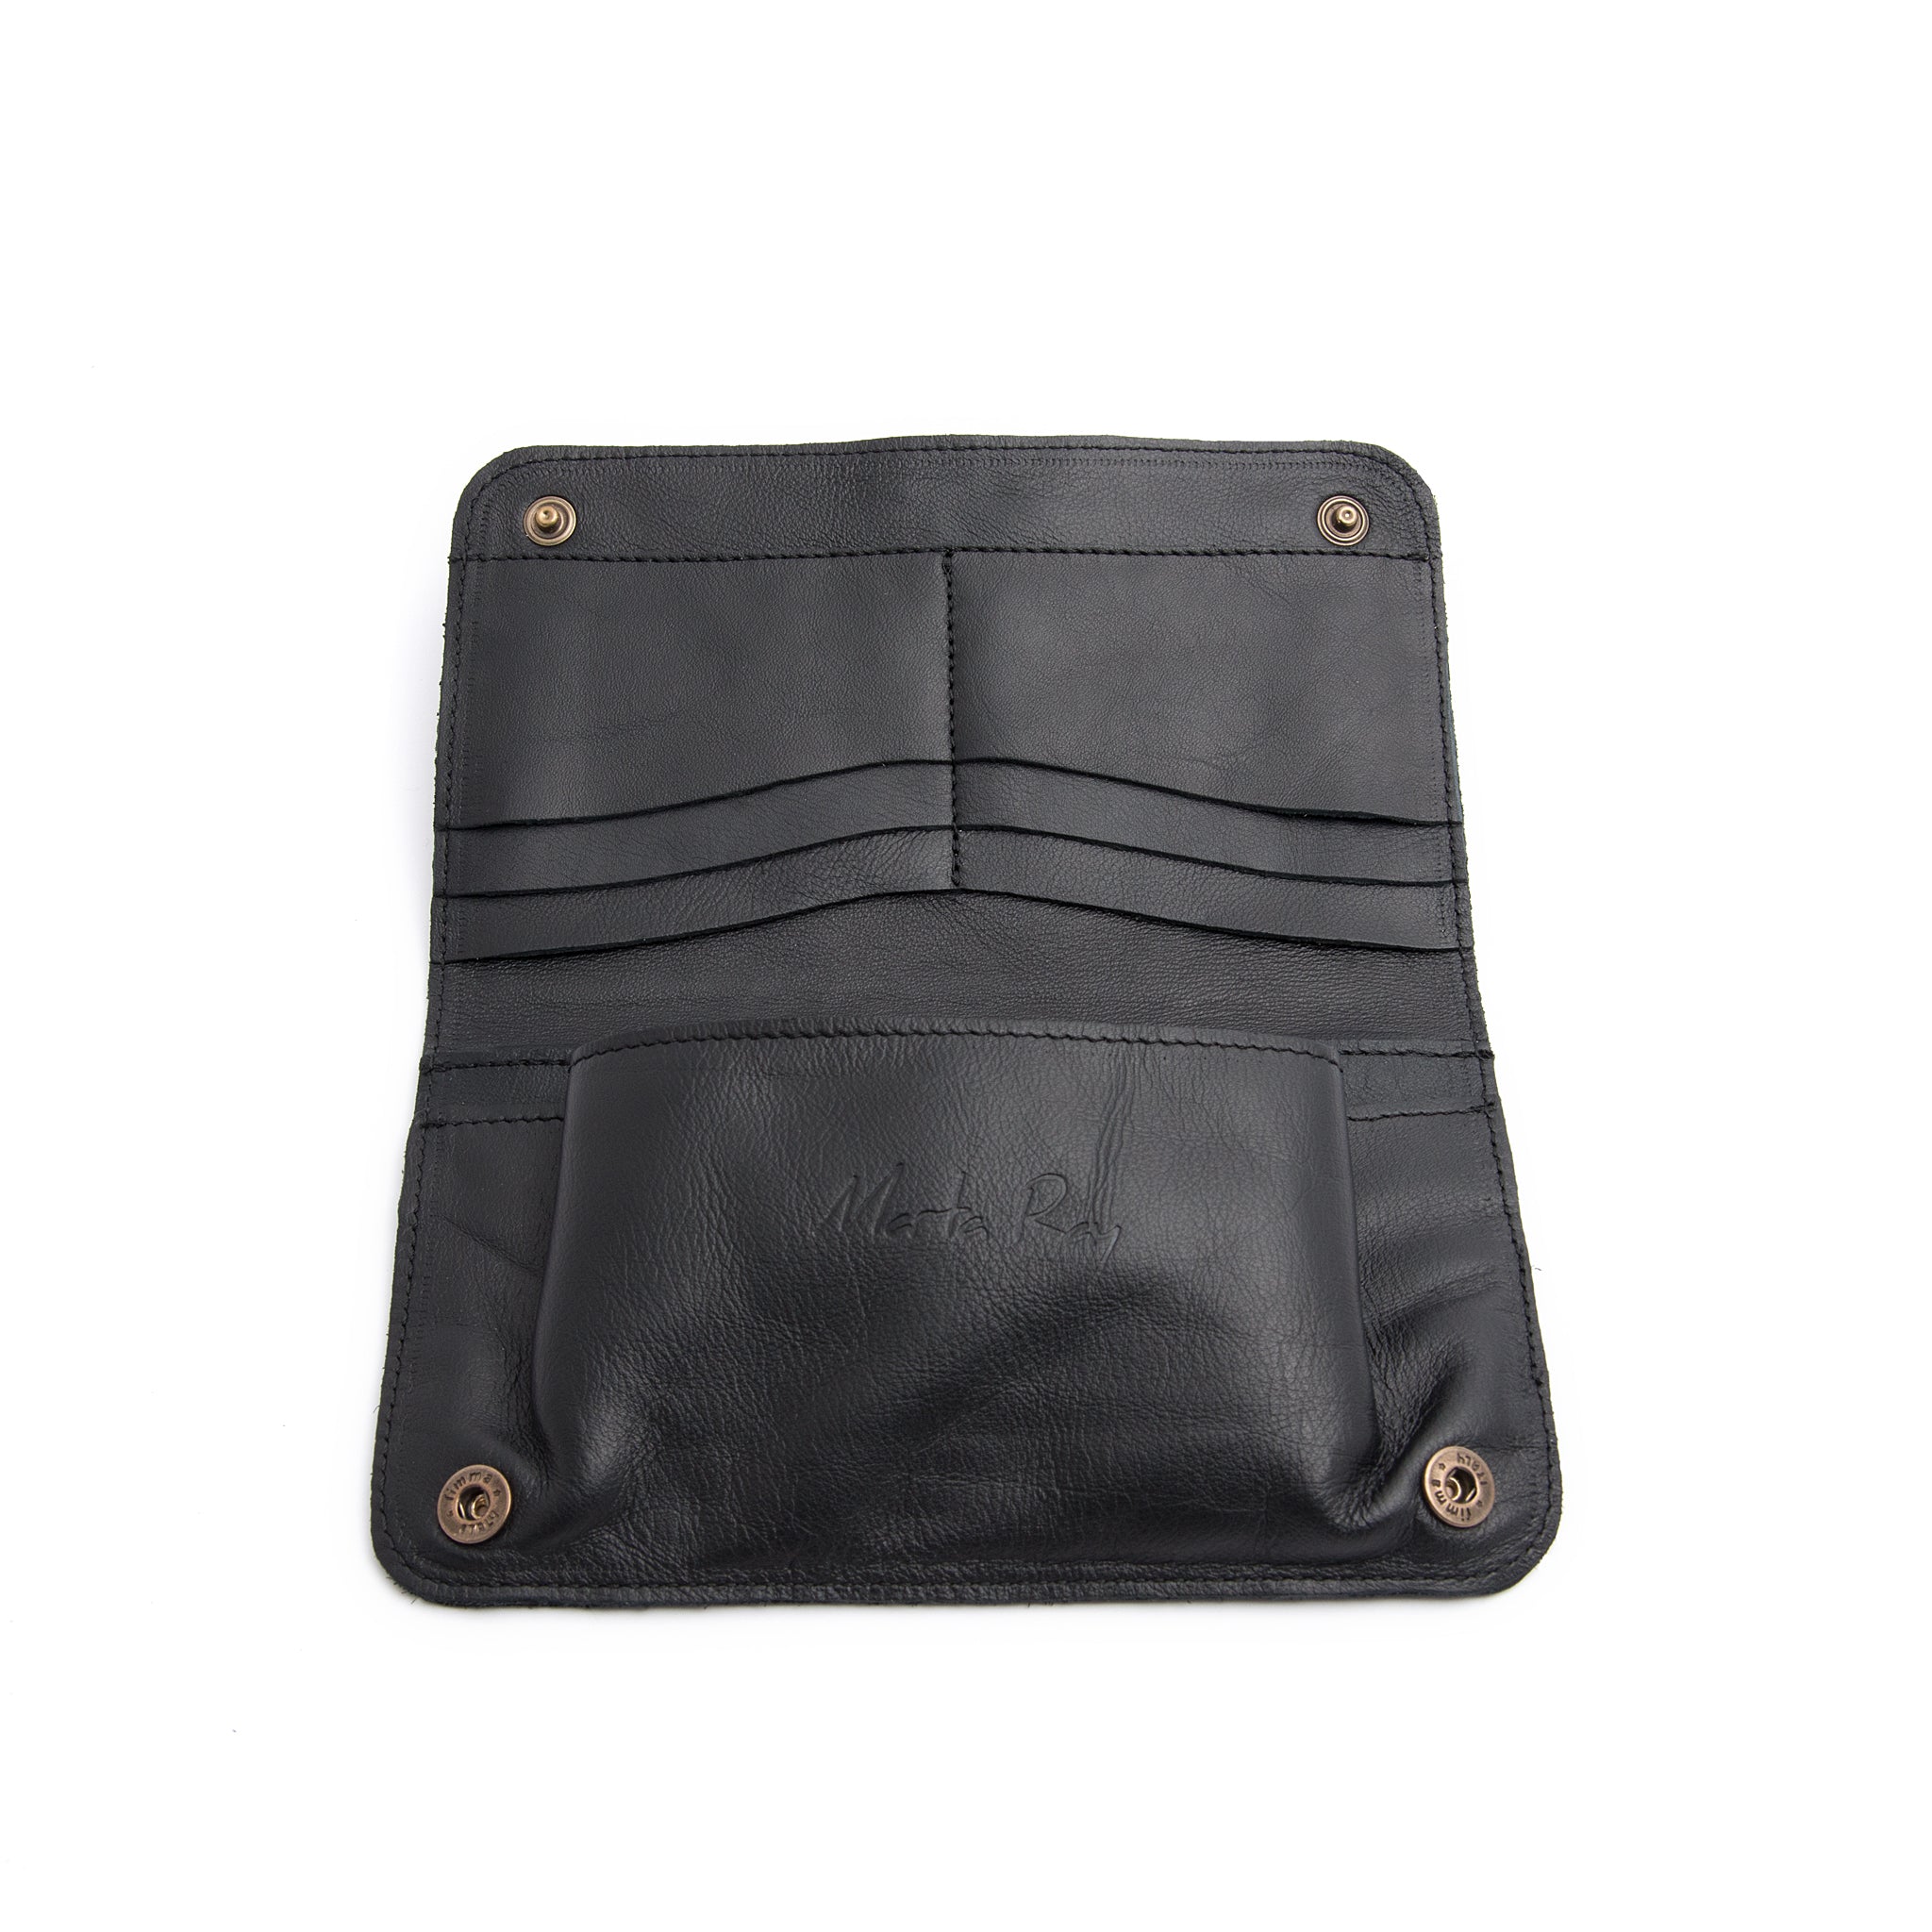 Kiki wallet mousse nero - portafogli in pelle nera - Marta Ray